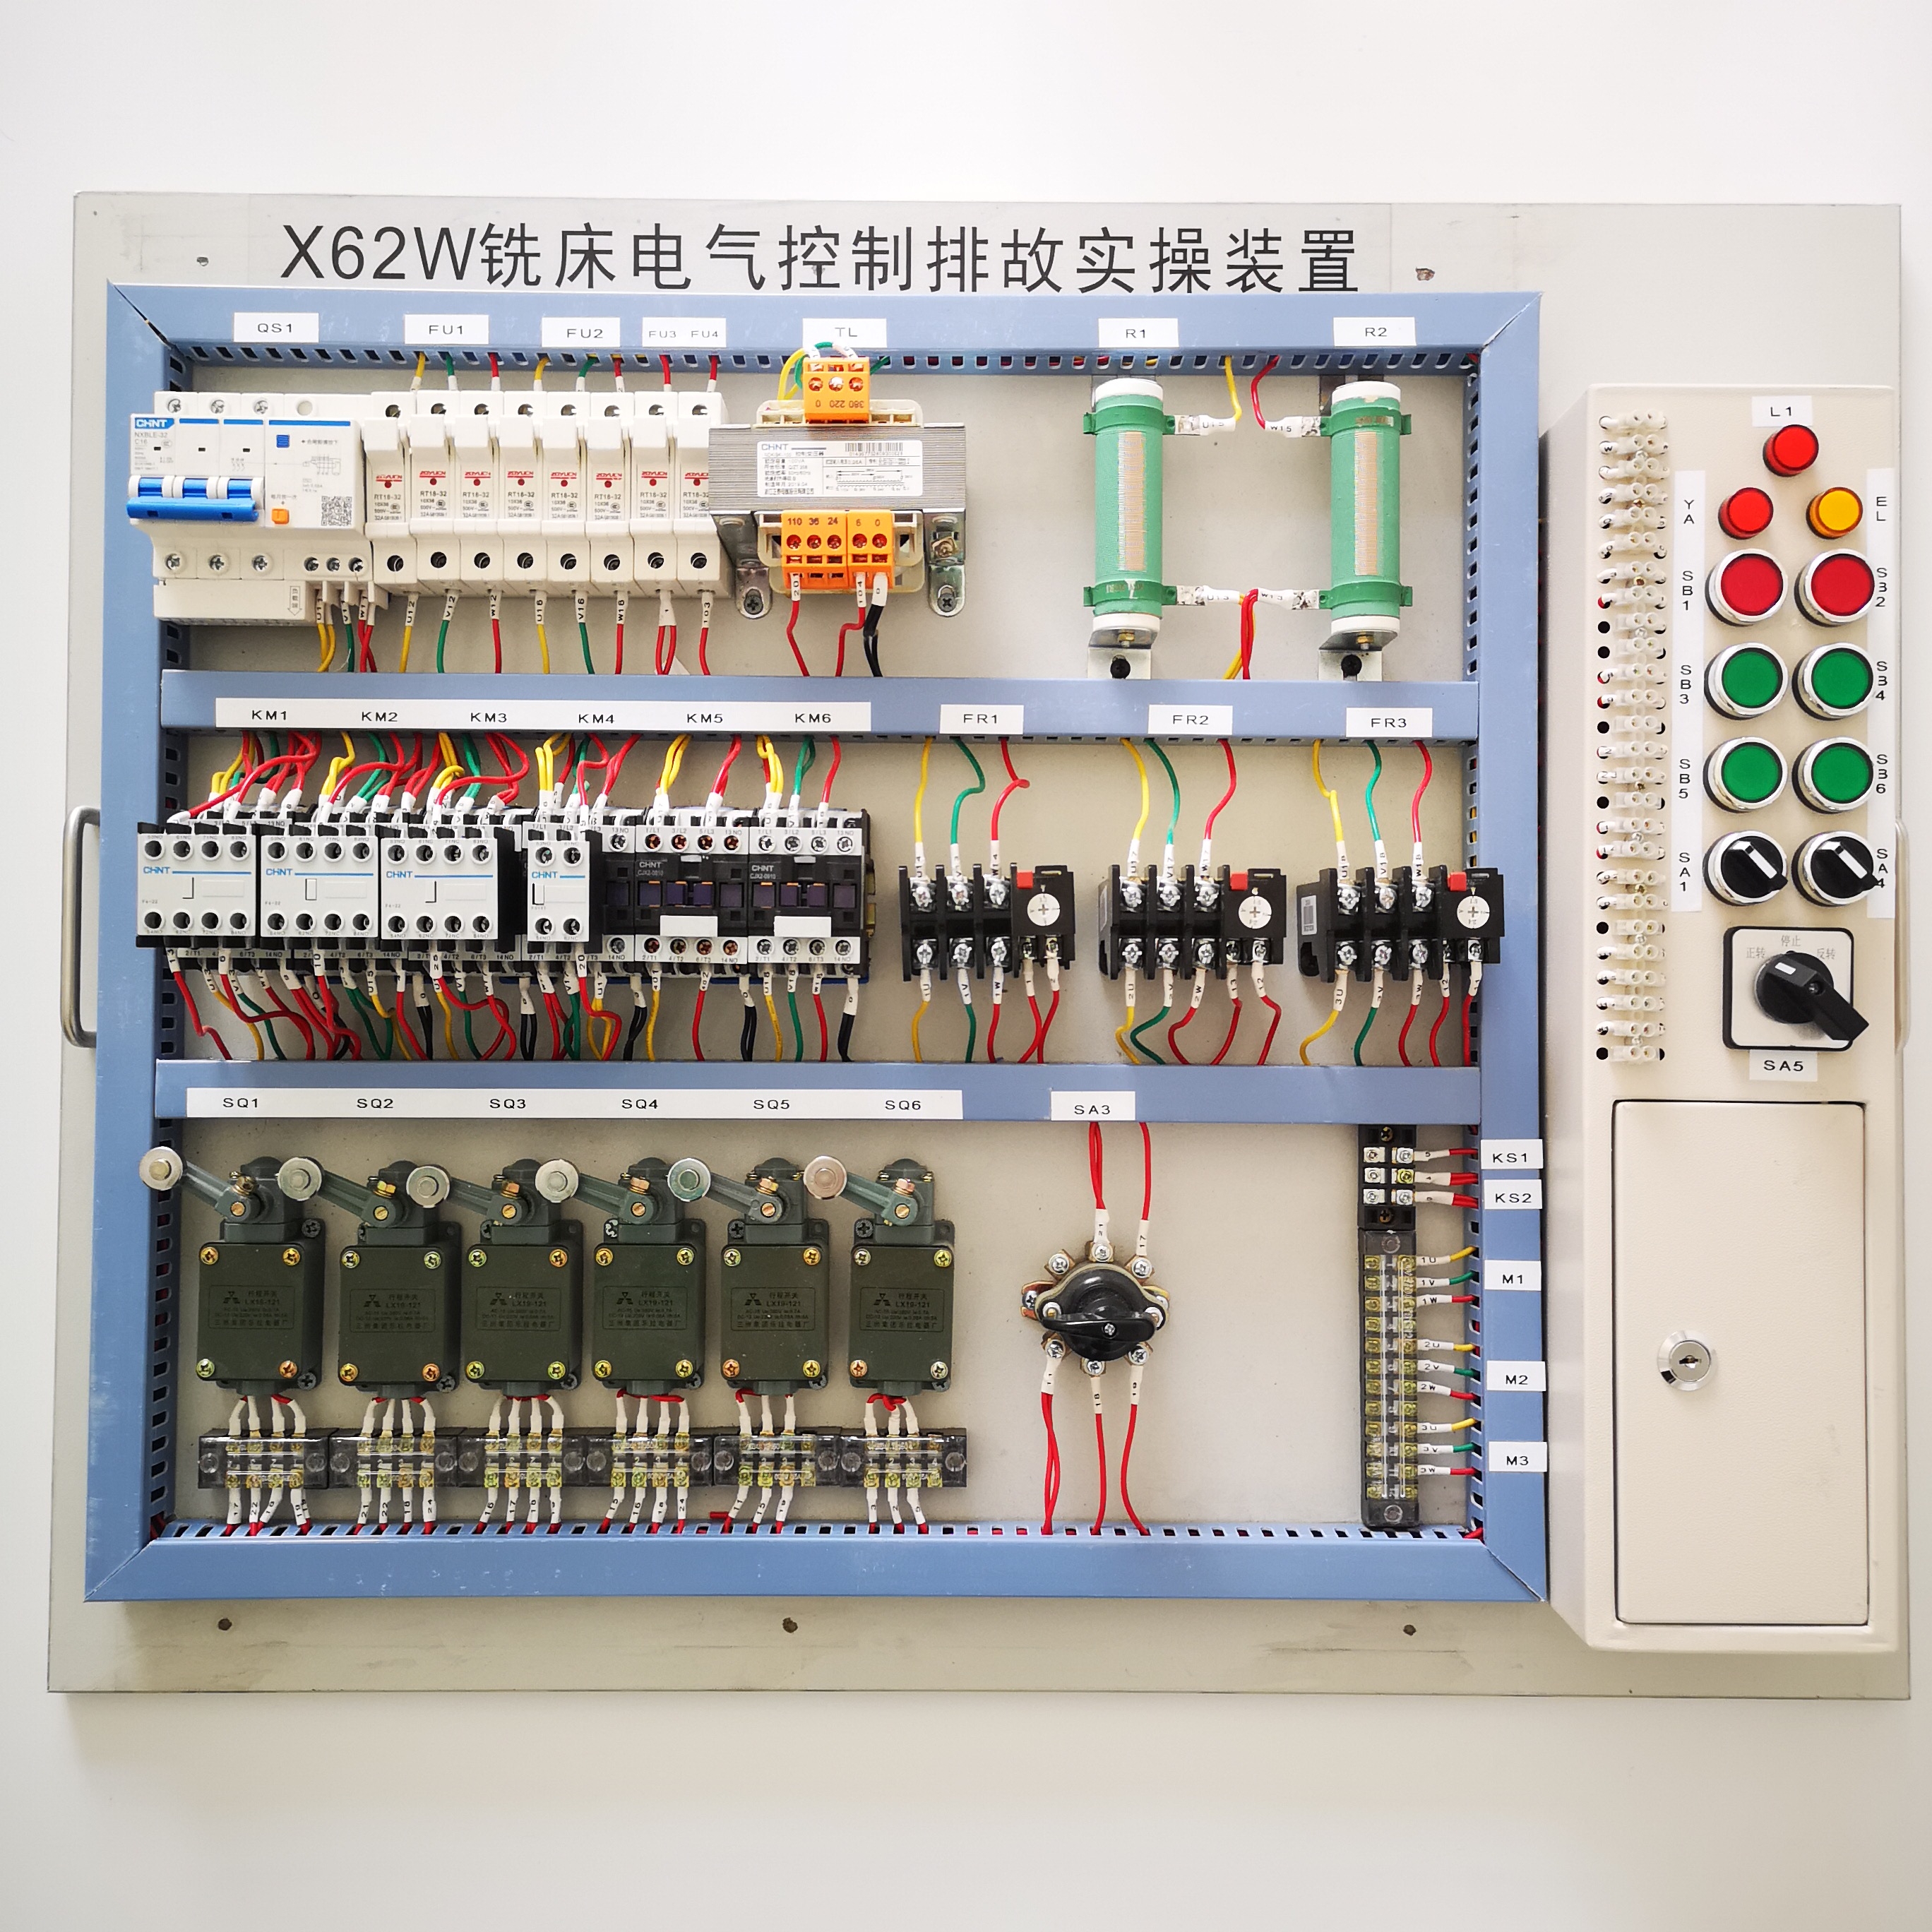 跃祥机床电气模块 电工考核-X62W铣床电气控制排故实训装置图片